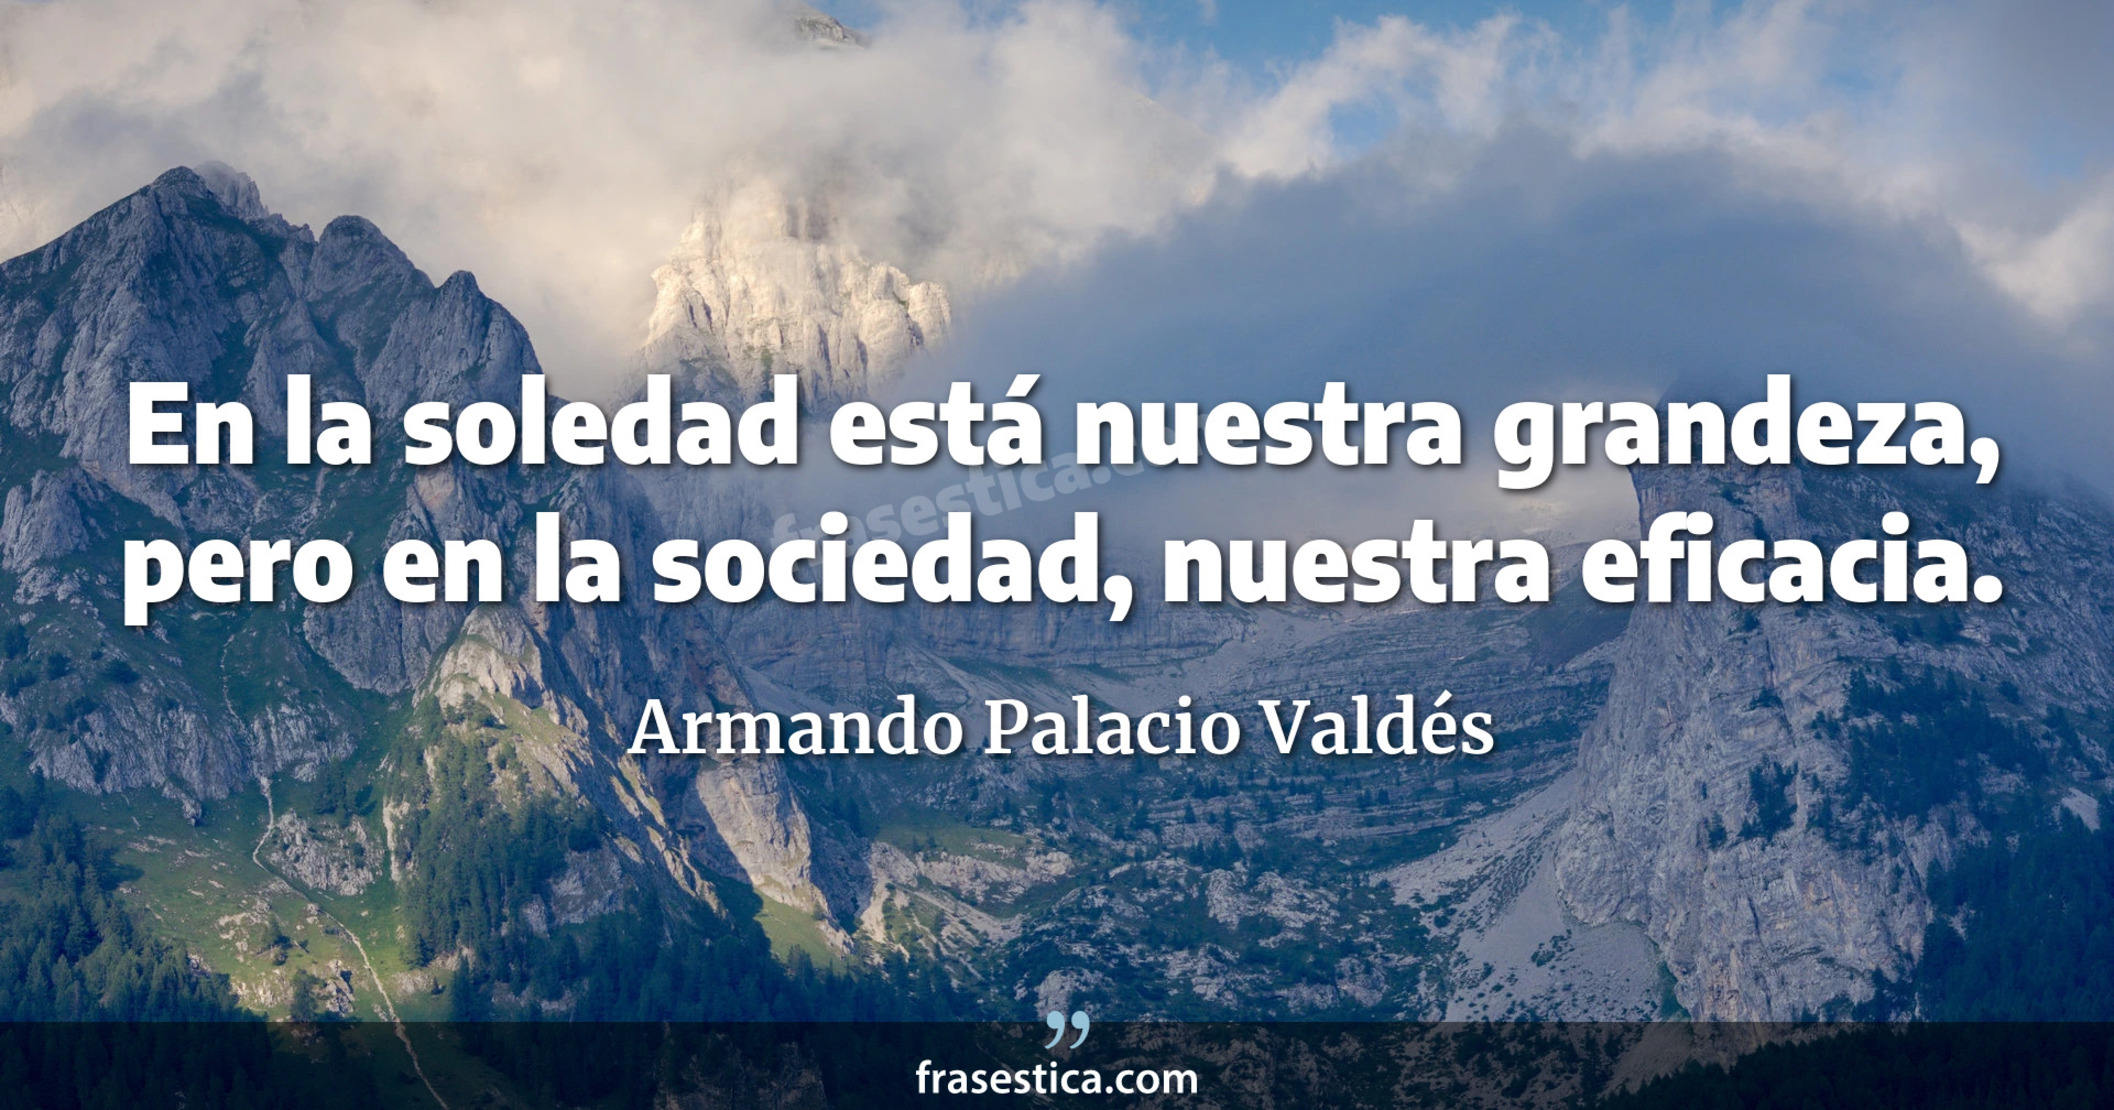 En la soledad está nuestra grandeza, pero en la sociedad, nuestra eficacia. - Armando Palacio Valdés